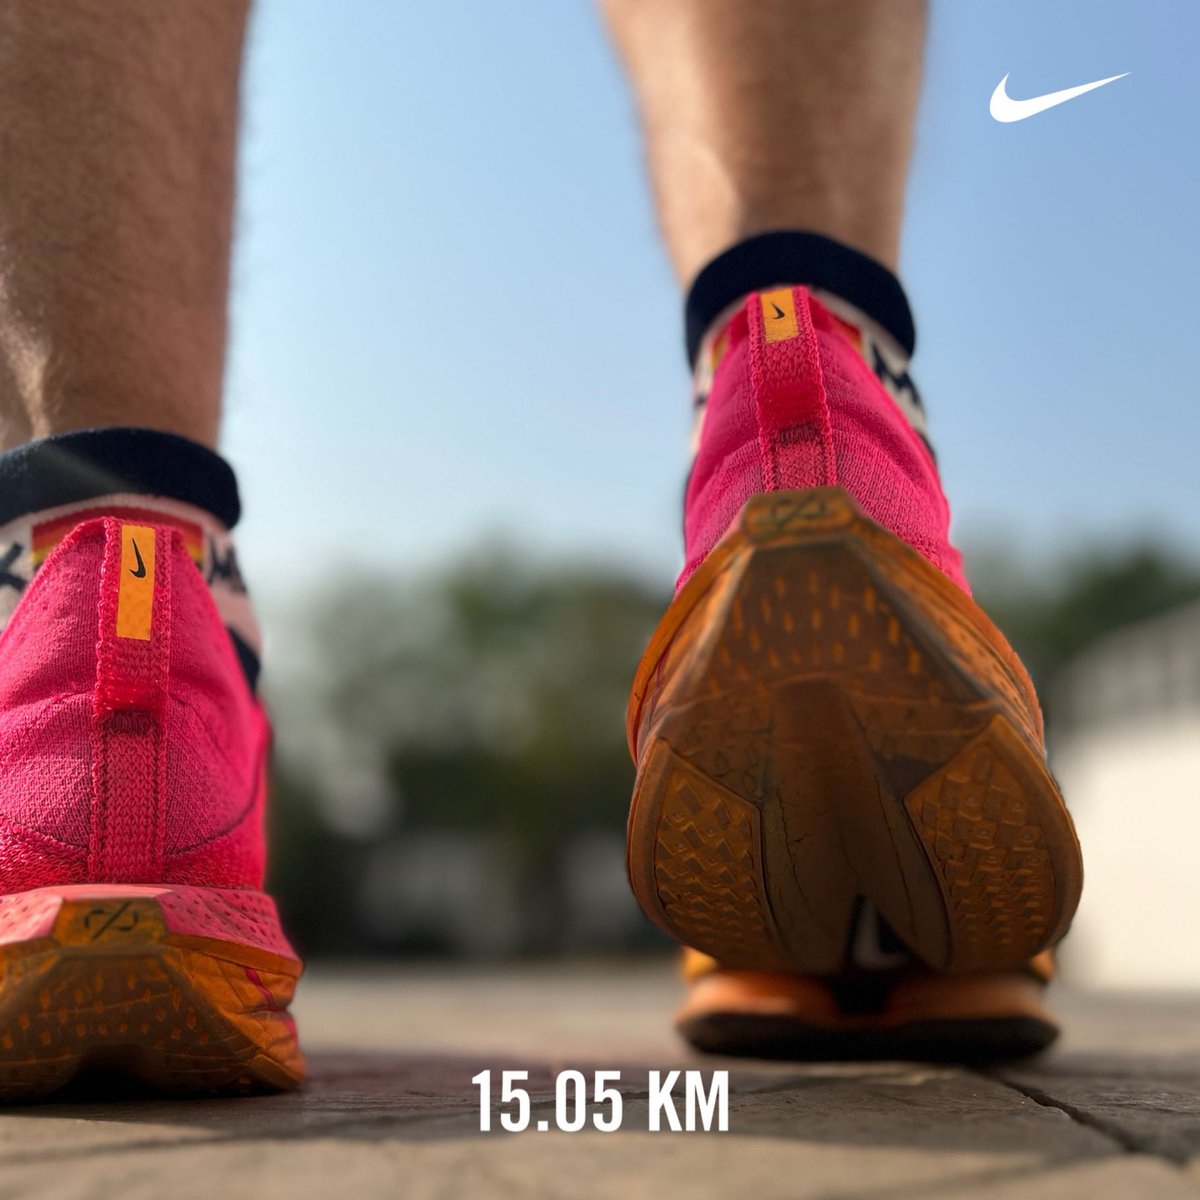 Ya salieron los kilómetros del día!!! Además, de que siempre es grato encontrar en la ruta a los buenos como ⁦⁦@rykardomch⁩  #SiMeVenSaluden #nikerun #YoElegiCorrer #Run #SomosFénixRun #Comunirunners #Running #ULTIMAHORA #Reto2024Kms